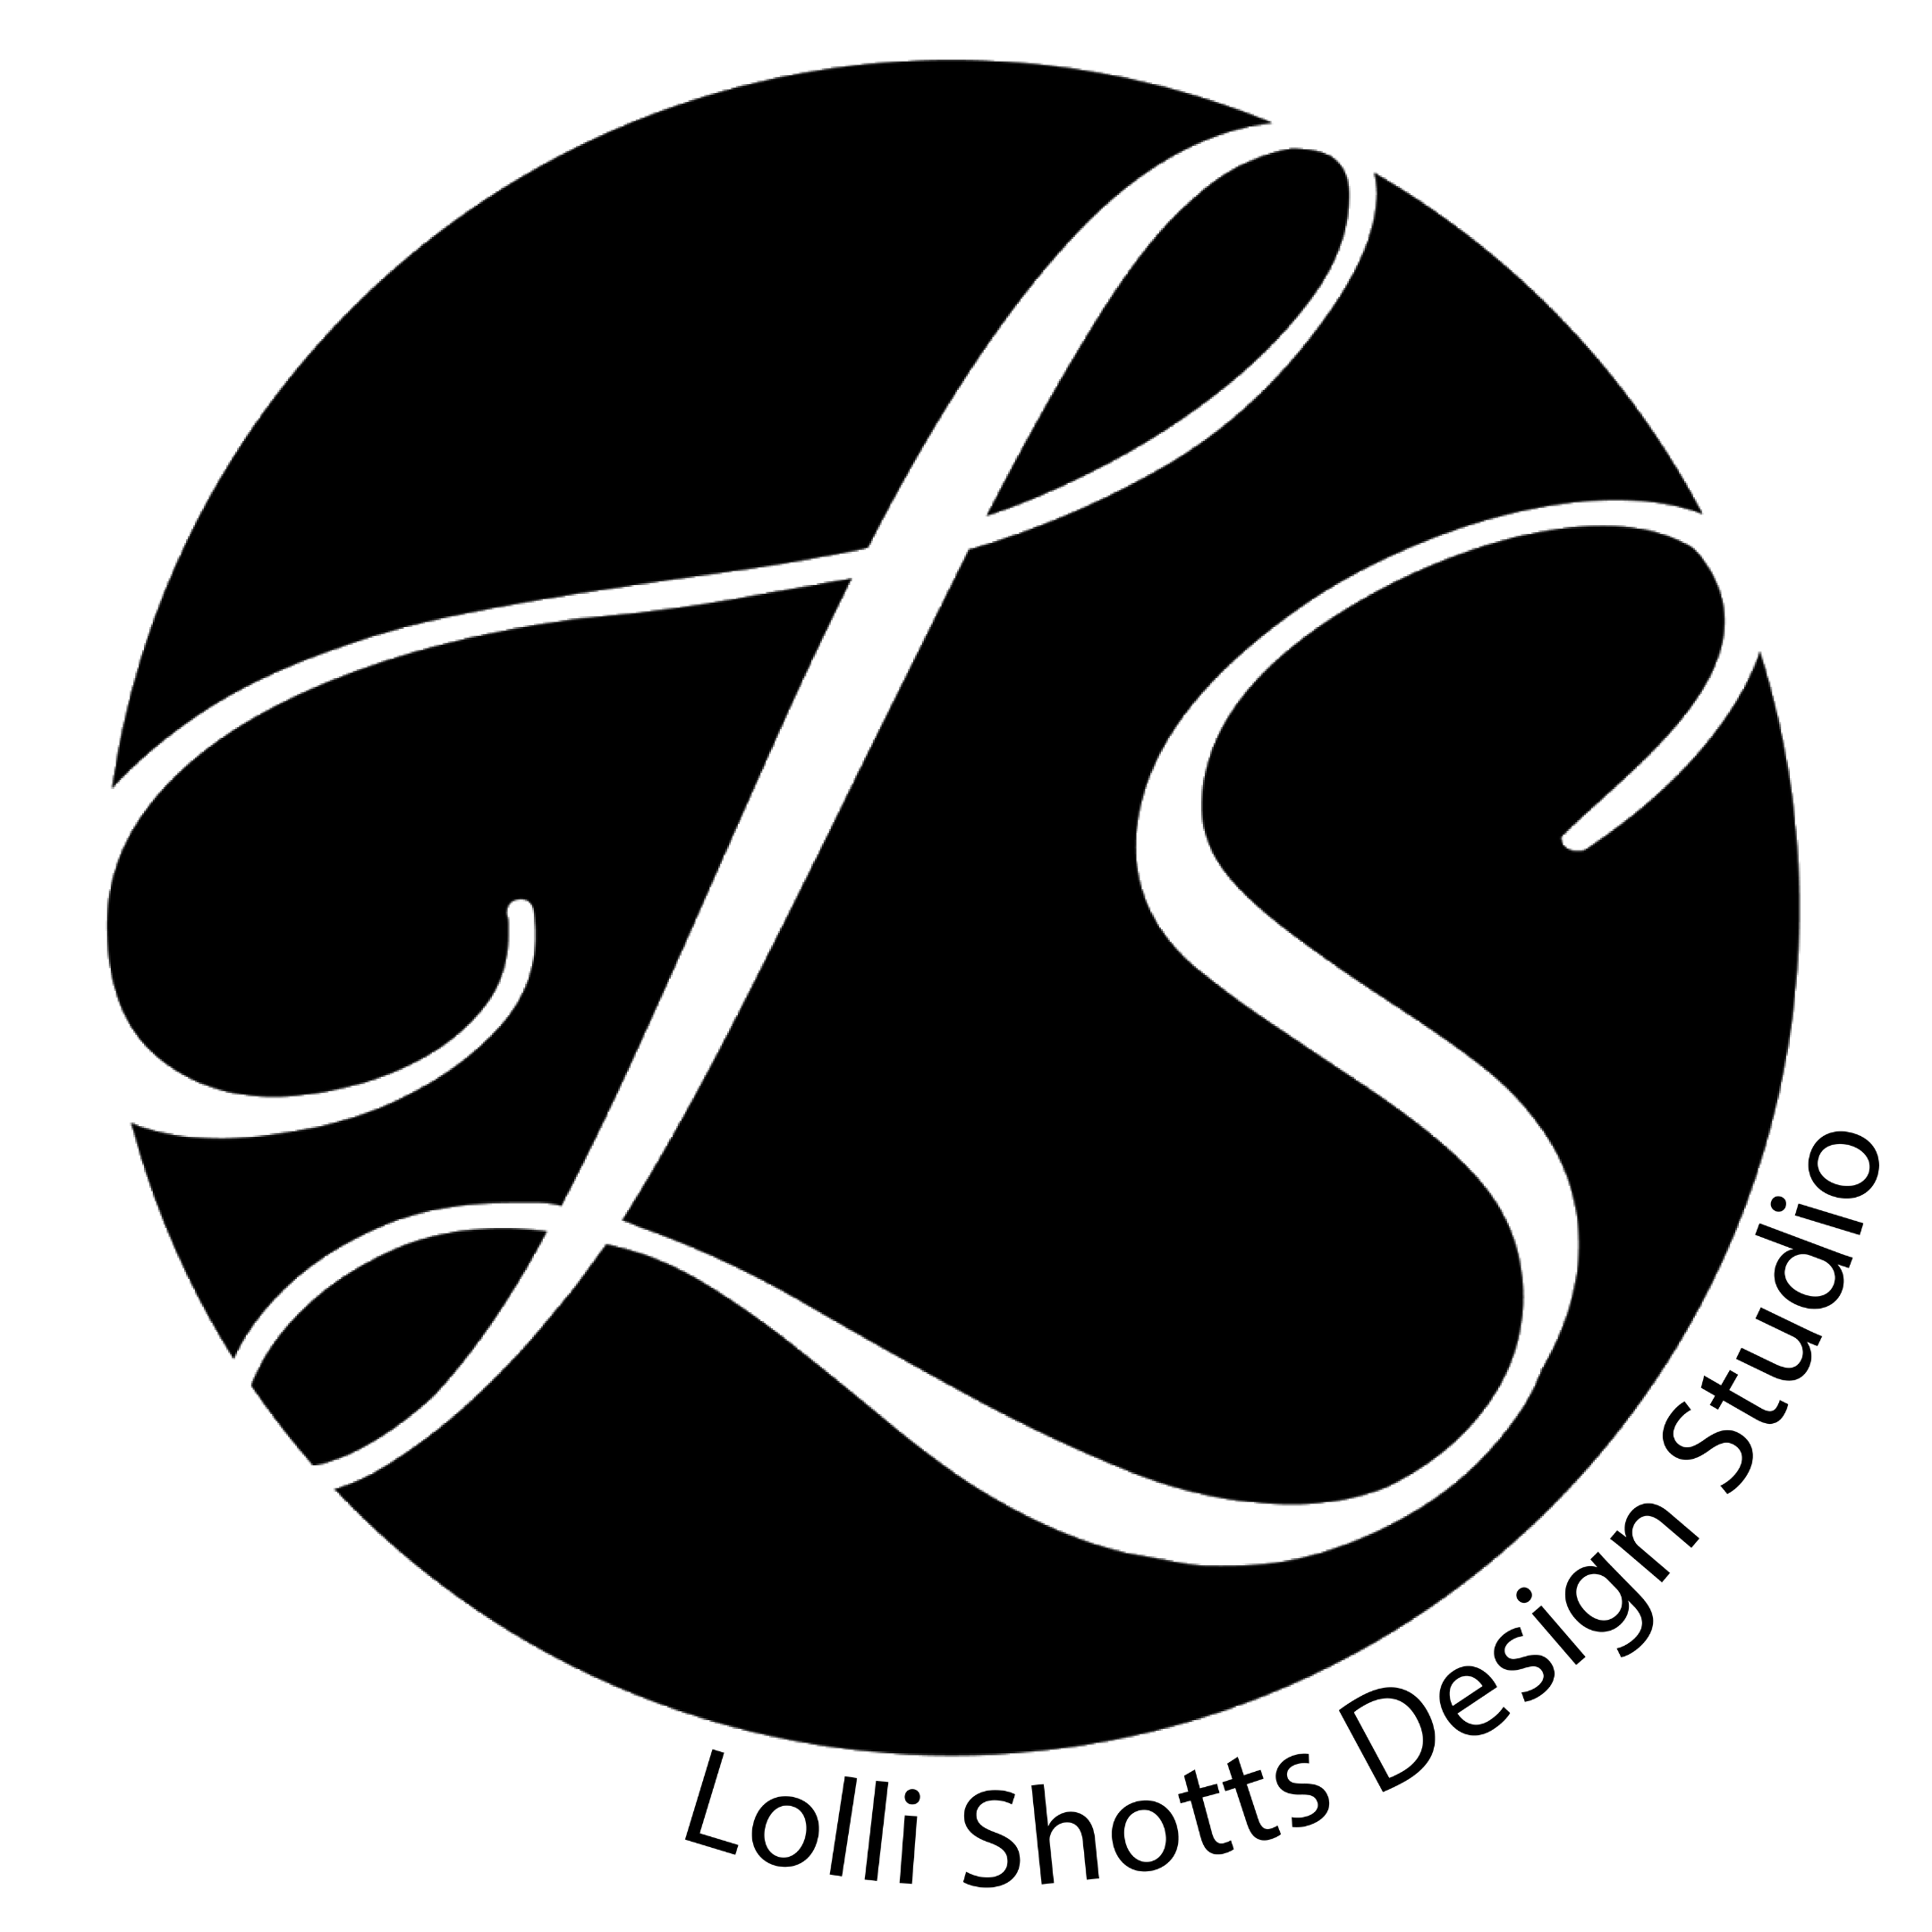 Lolli Shotts Design Studio